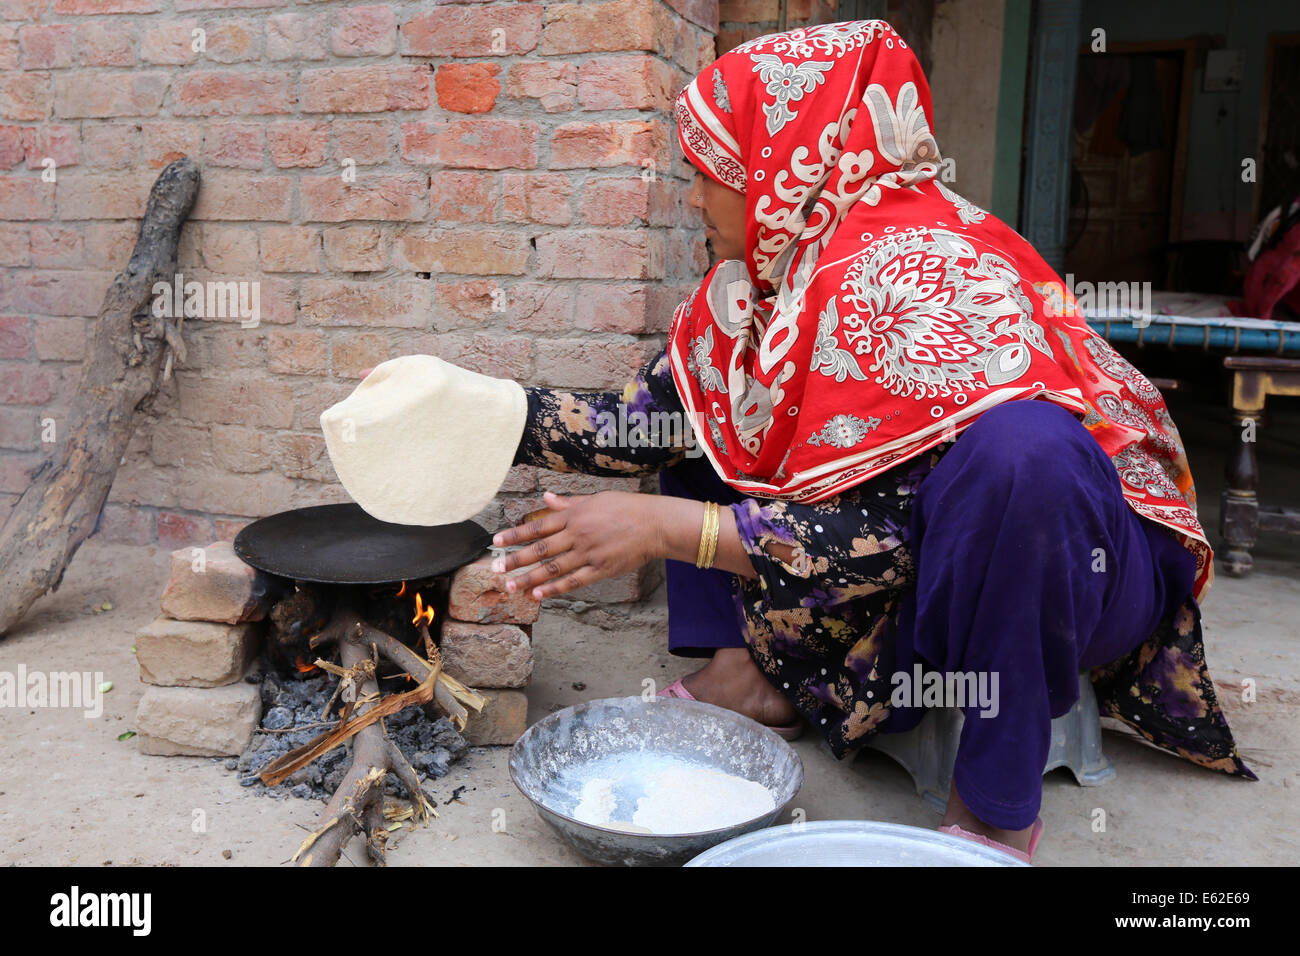 Frau in traditioneller Kleidung Roti Brot (auch bekannt als Chapati) am offenen Feuer backen. Khushpur Dorf, Provinz Punjab, Pakistan Stockfoto